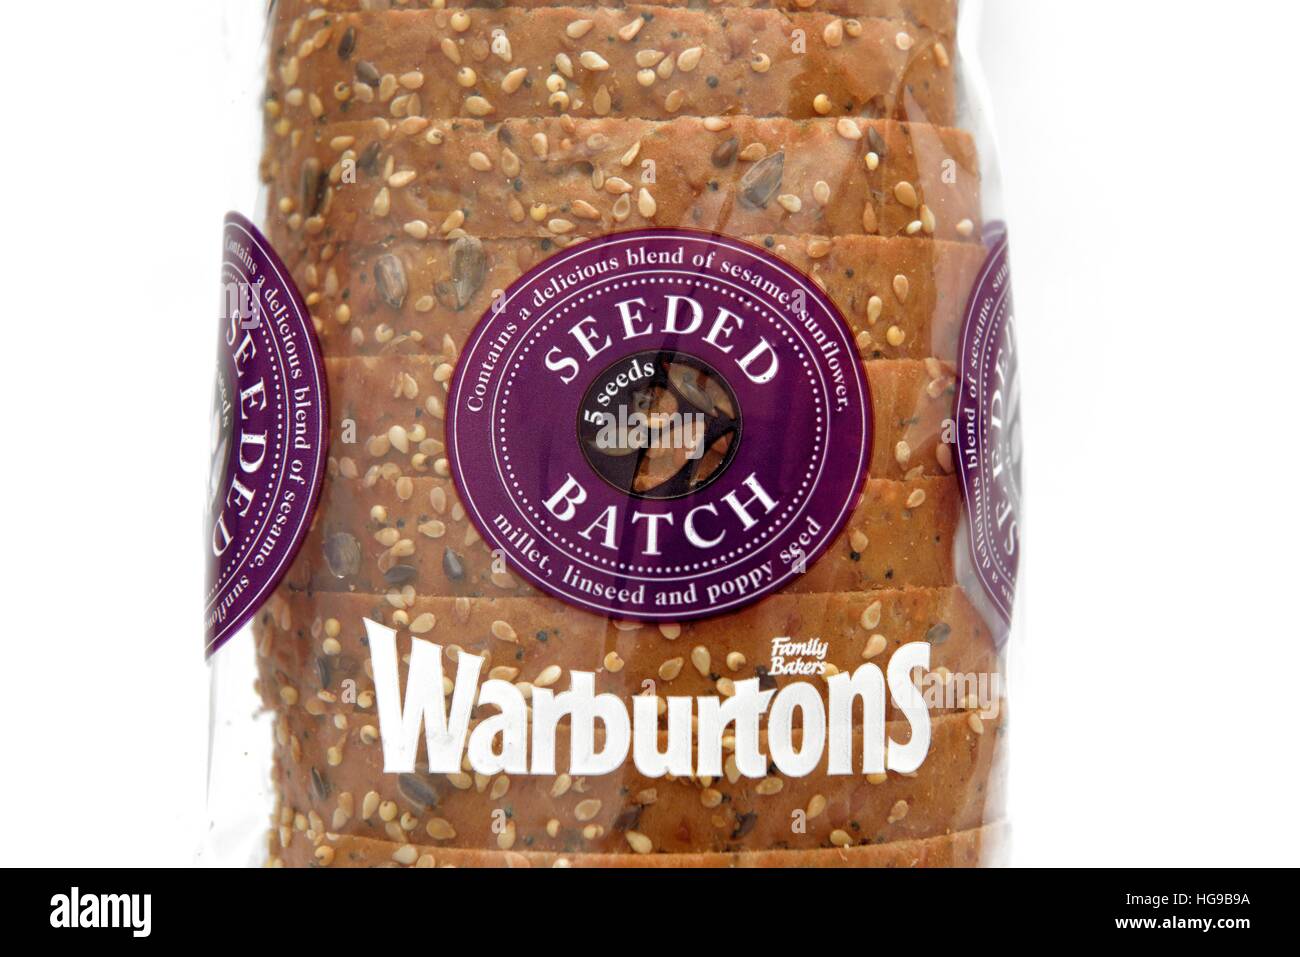 Lot ensemencé Warburtons 5 pain de combinaison de graines de lin, millet, pavot, tournesol, et le sésame. Banque D'Images